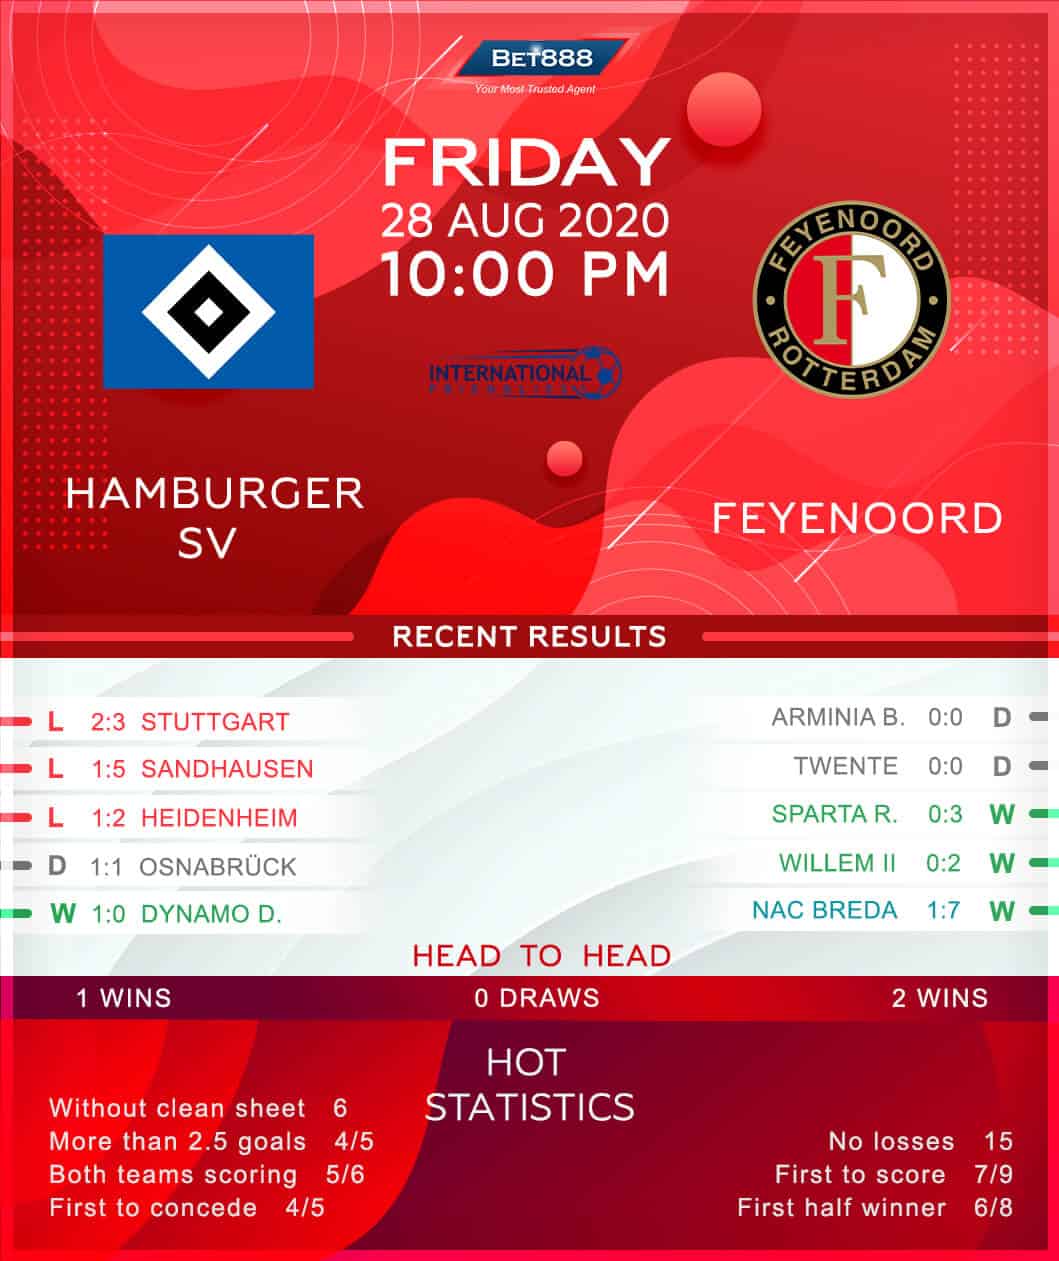 Hamburger SV vs Feyenoord 28/08/20